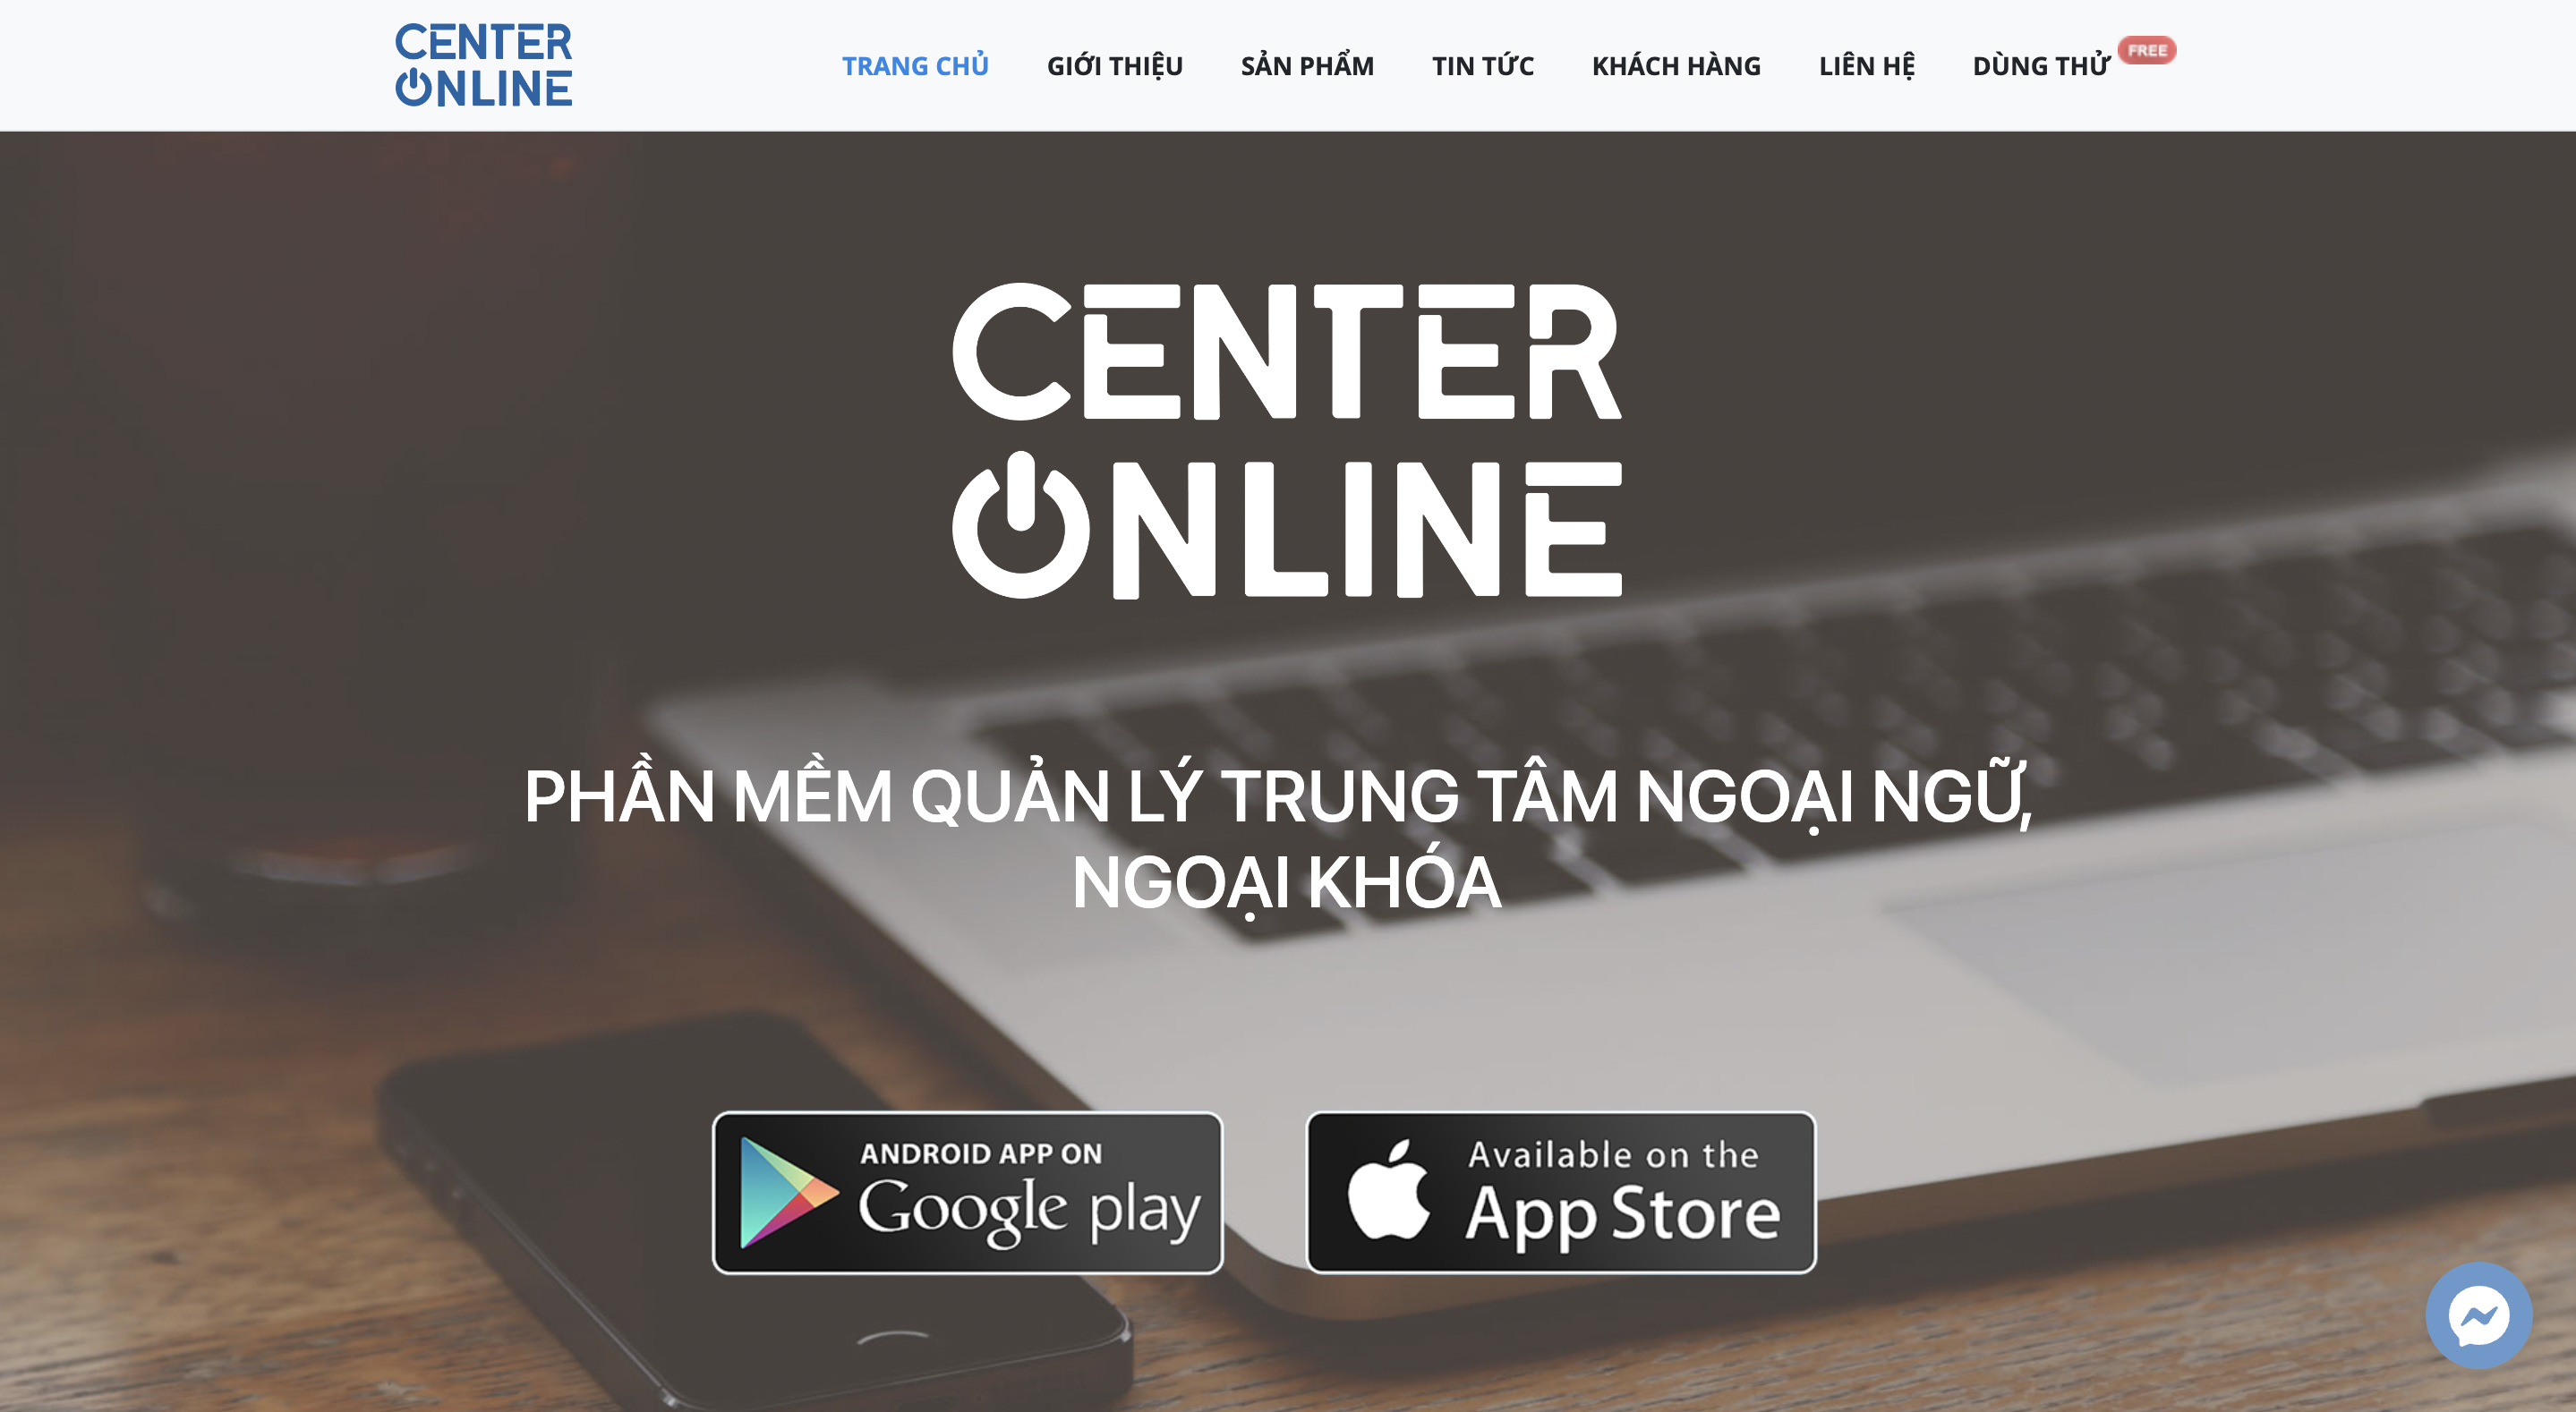 Phần mềm quản lý trung tâm ngoại ngữ và ngoại khoá - Center Online